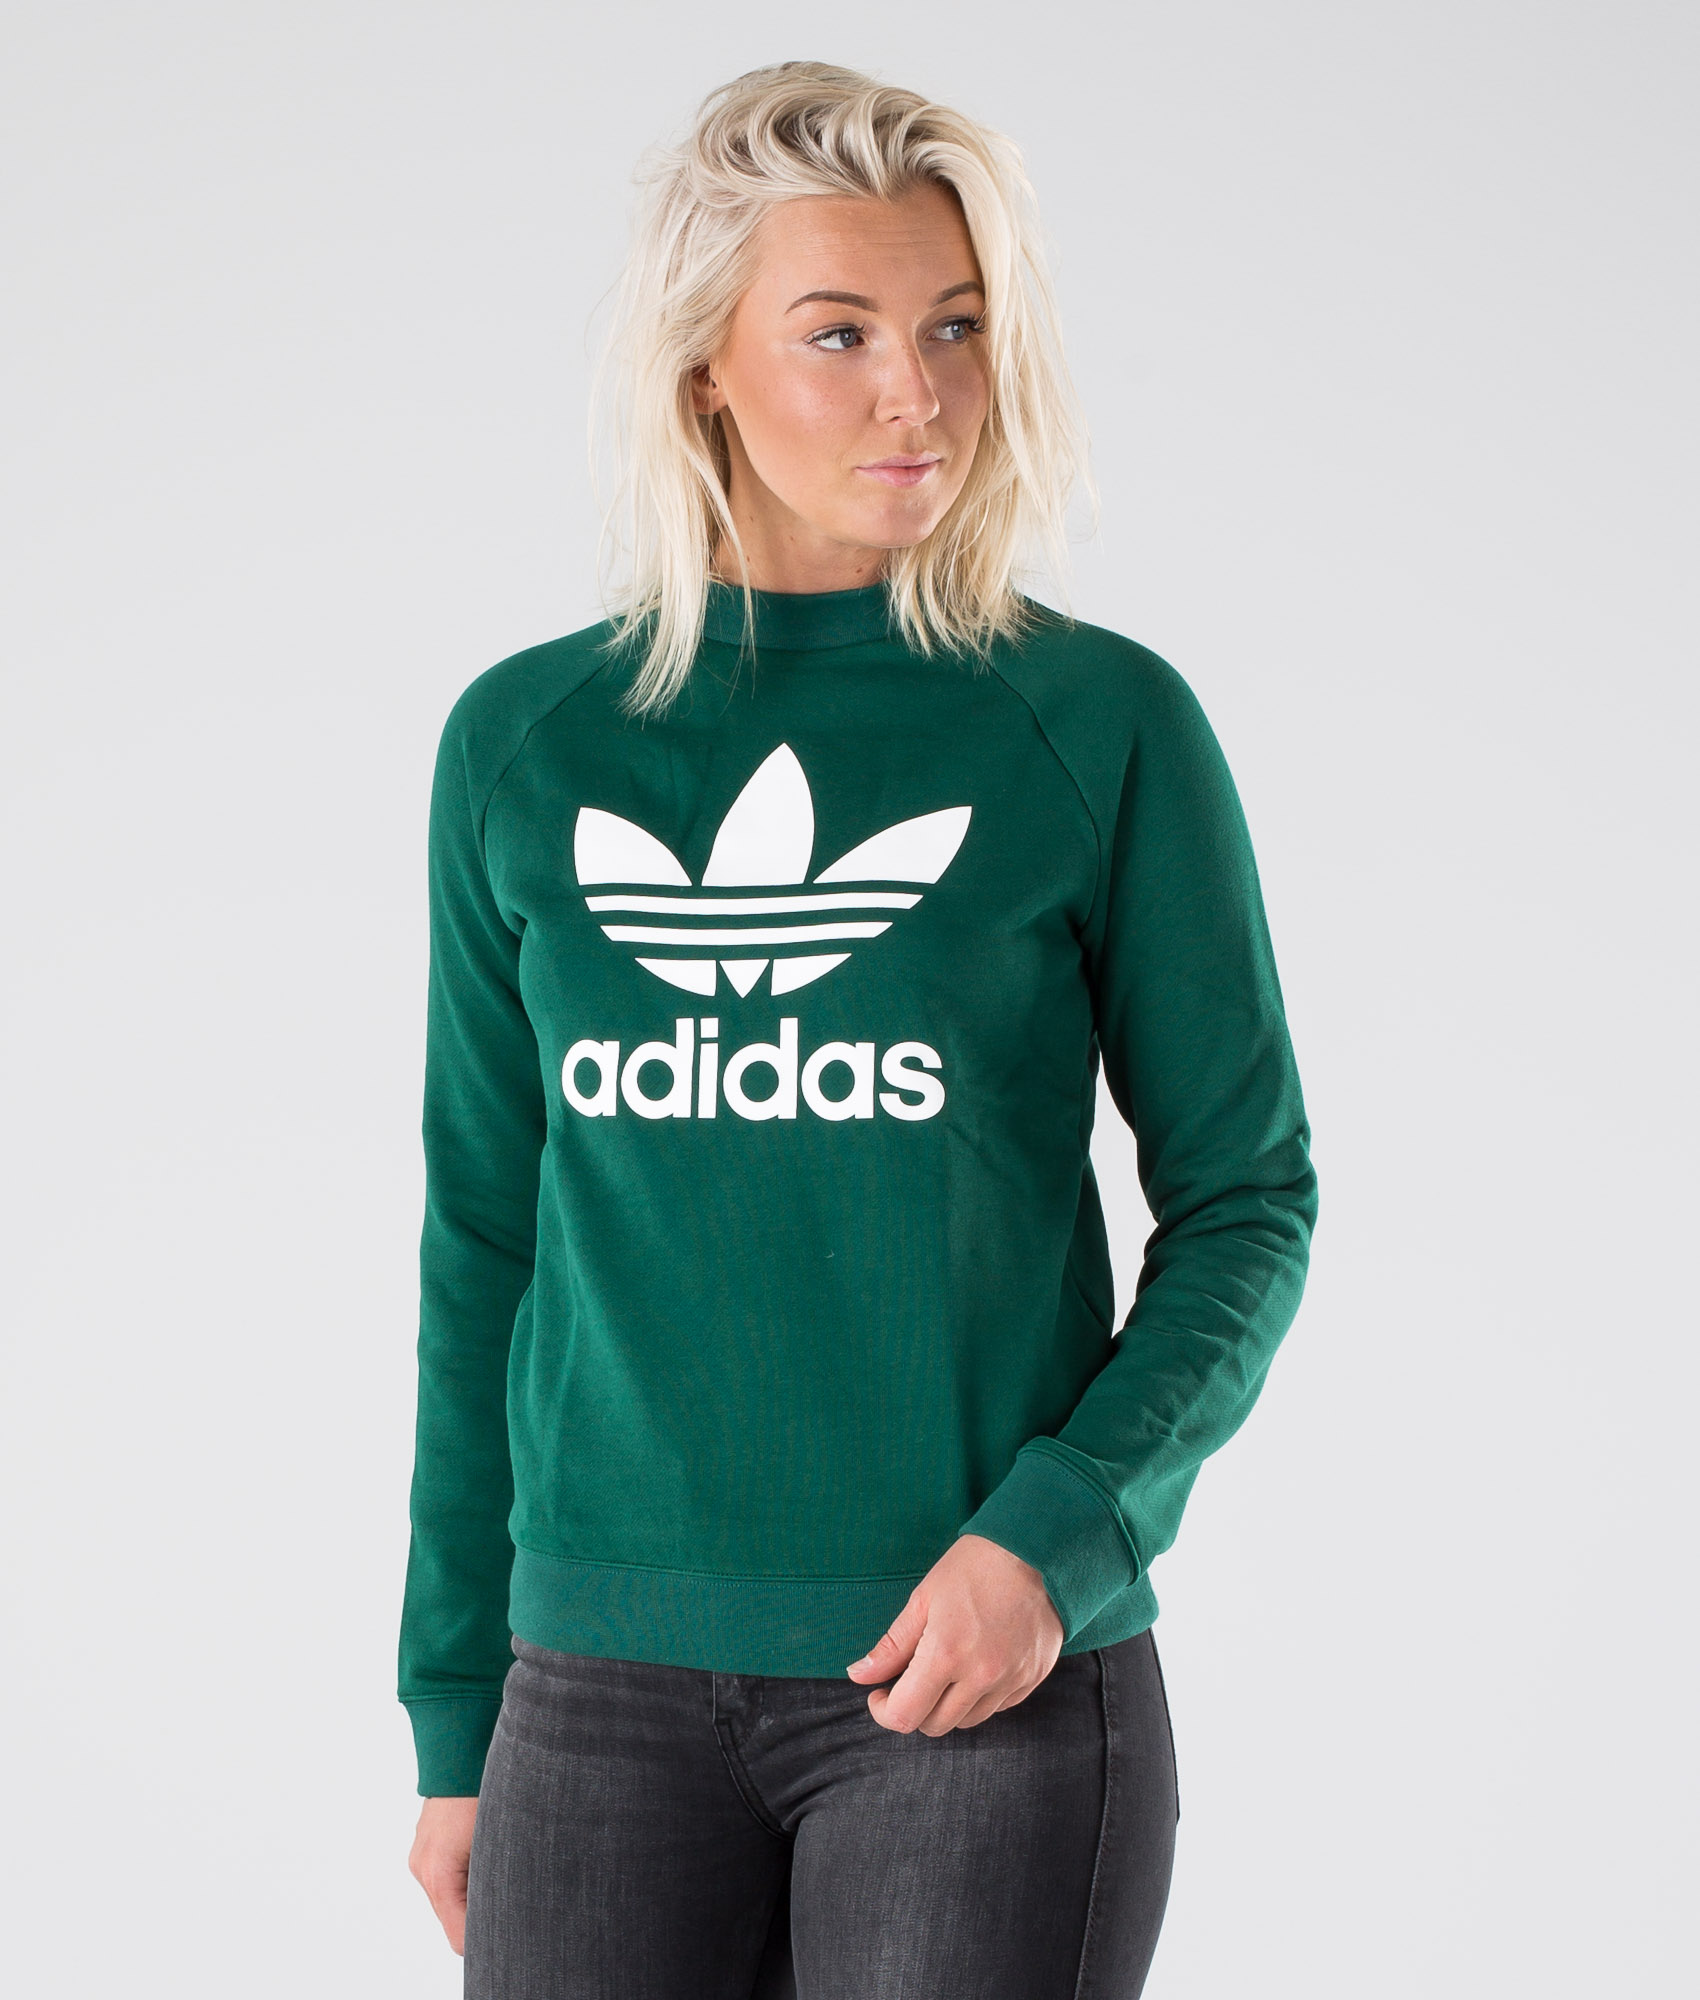 adidas trefoil hoodie collegiate green